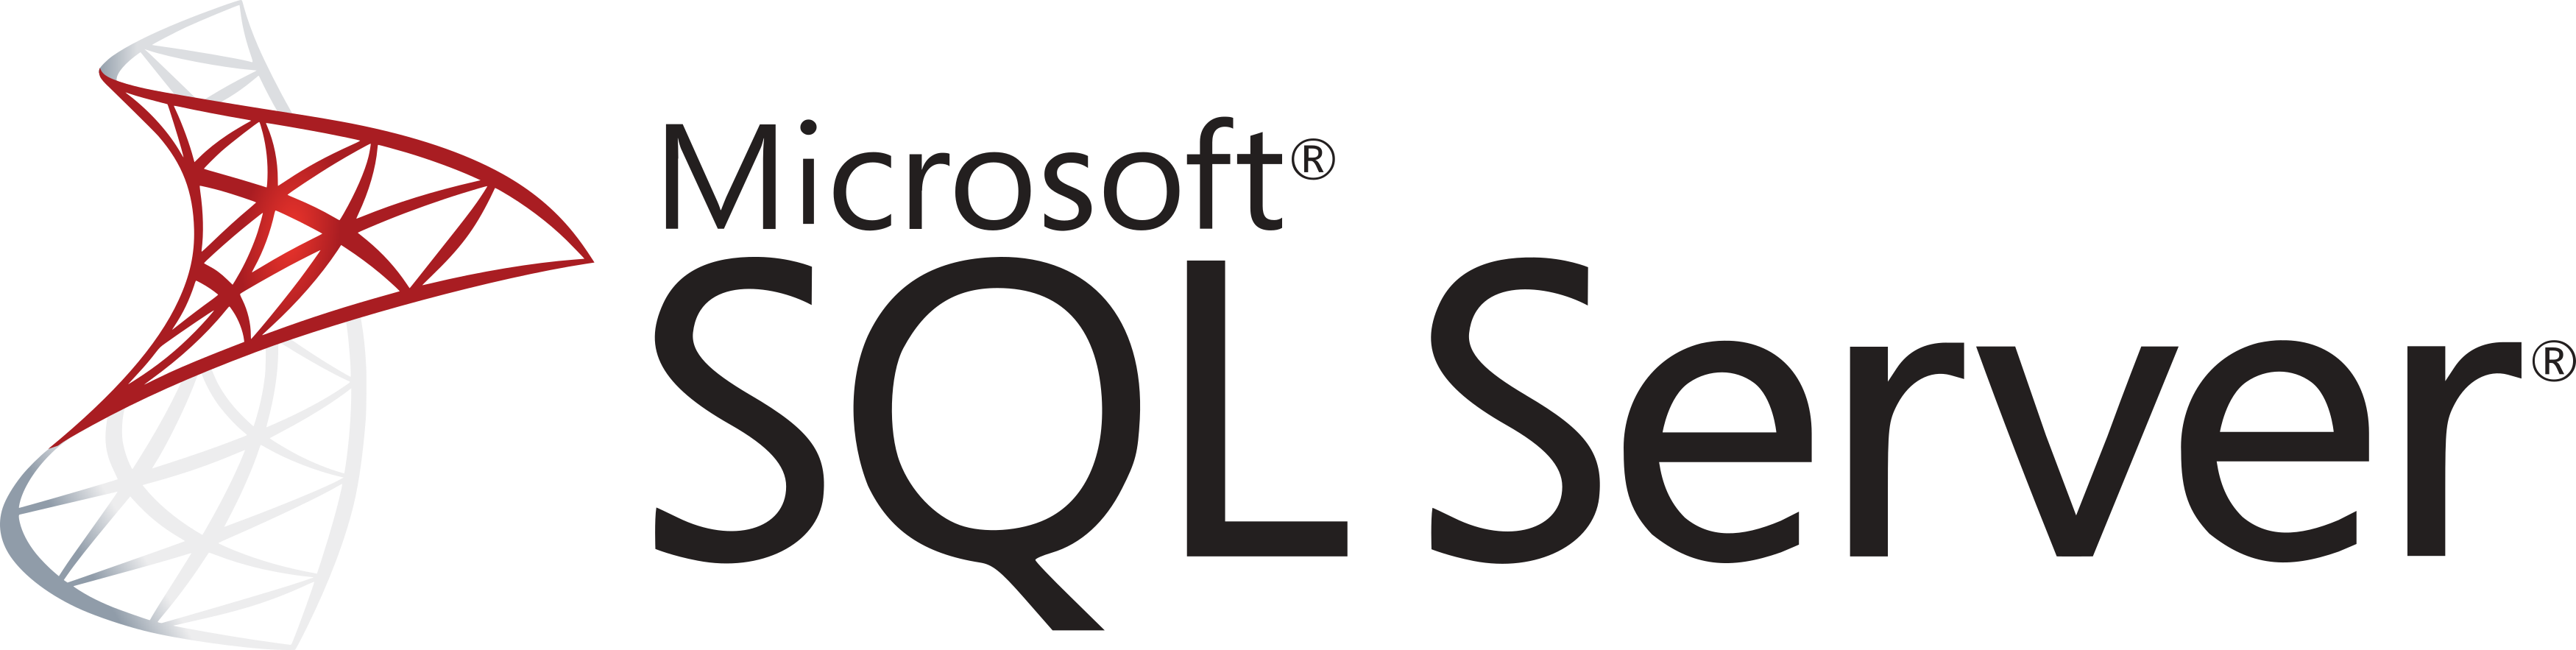 Microsoft Sql Server Logo 01 